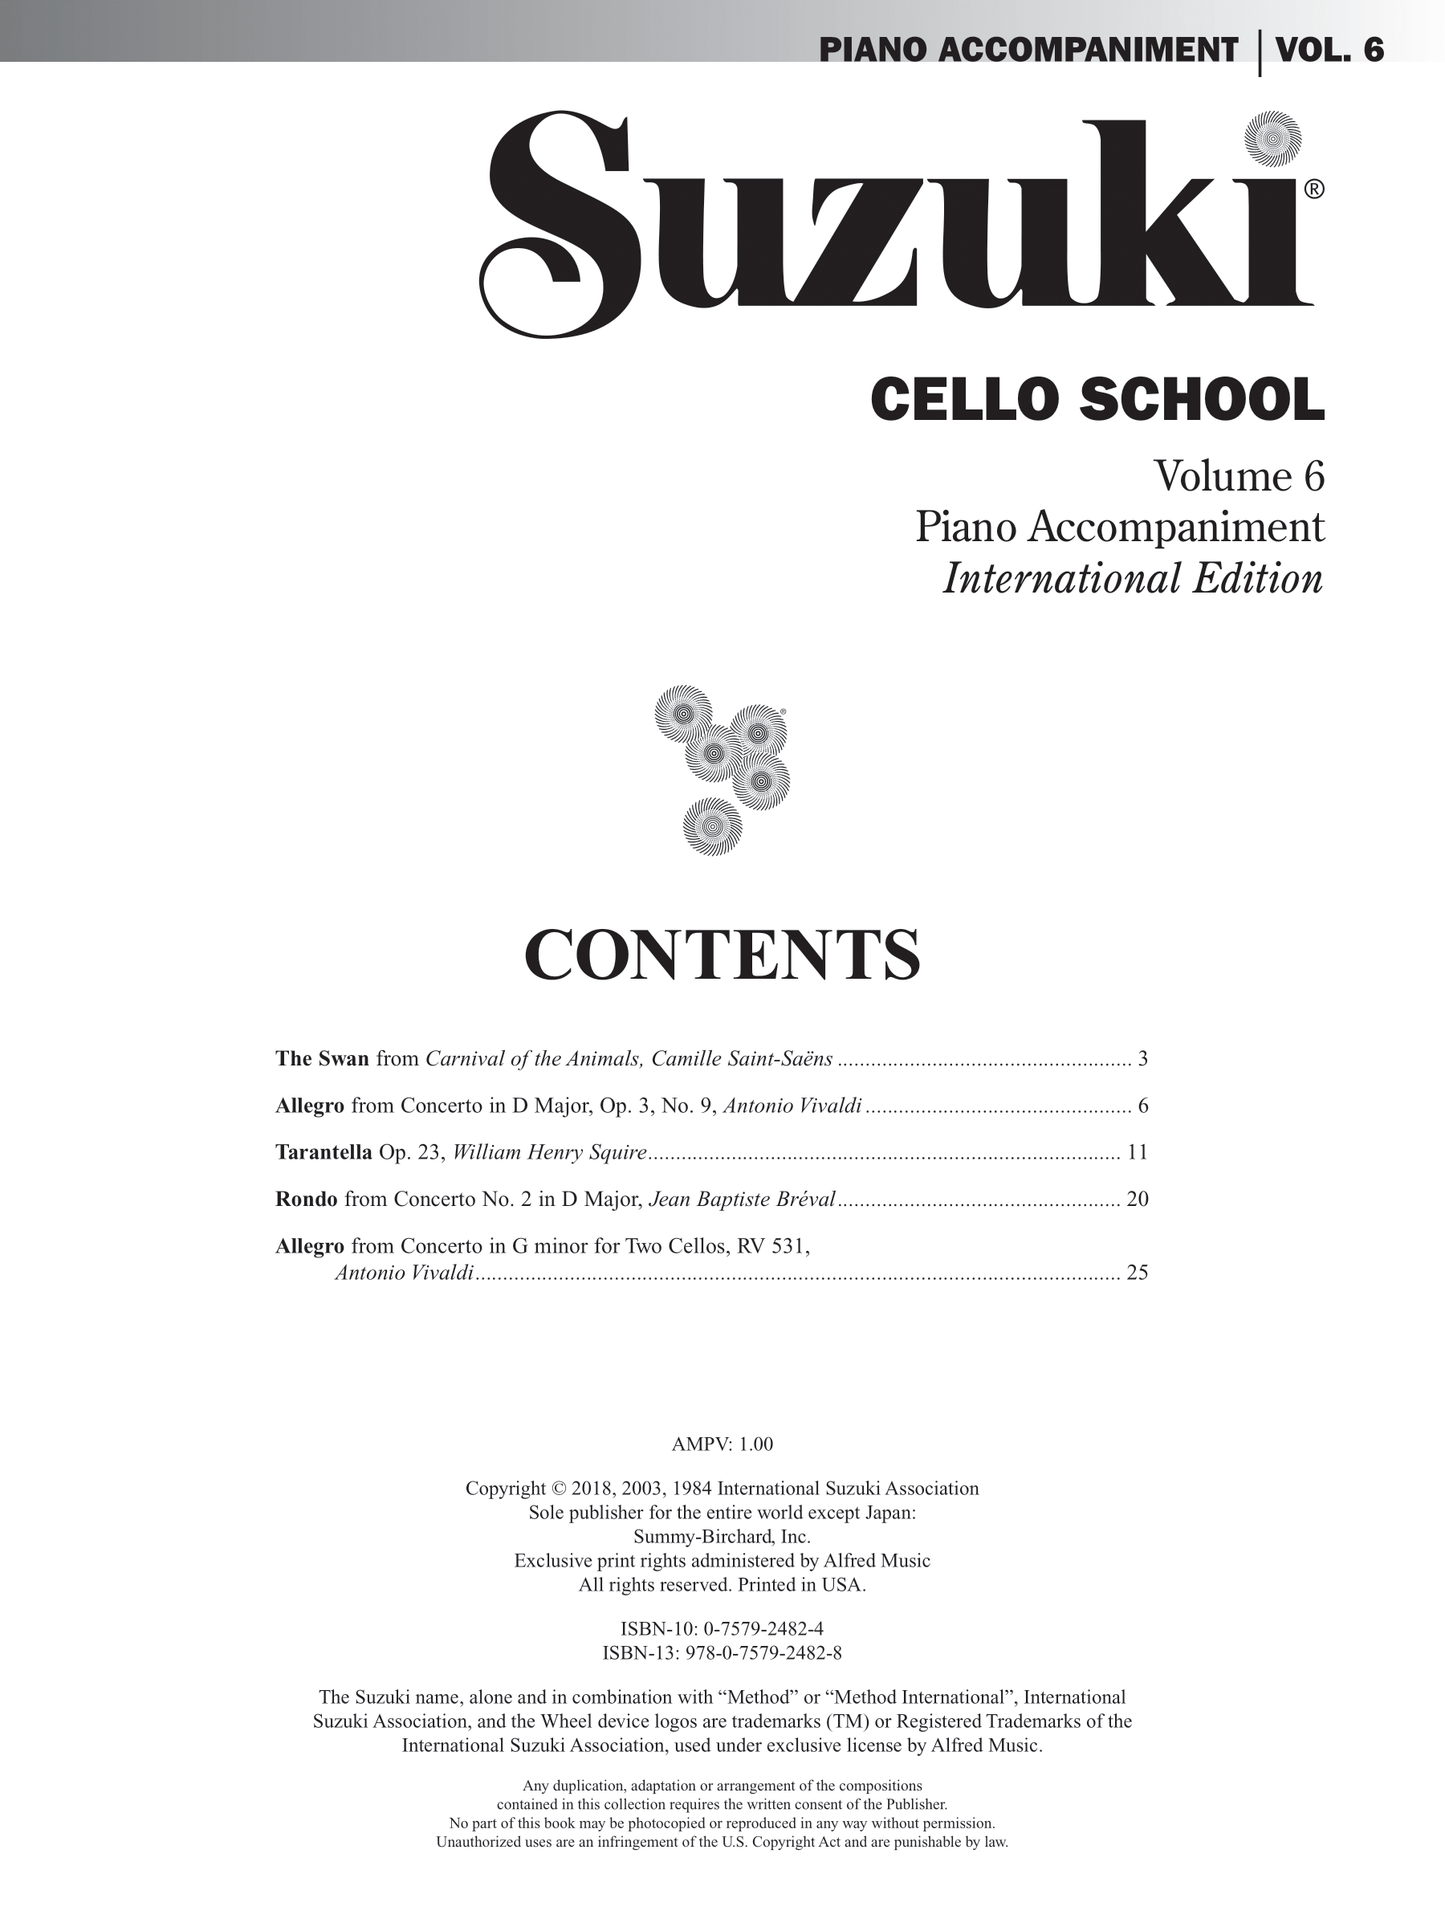 Suzuki Cello School - Volume 6 Piano Accompaniment Book